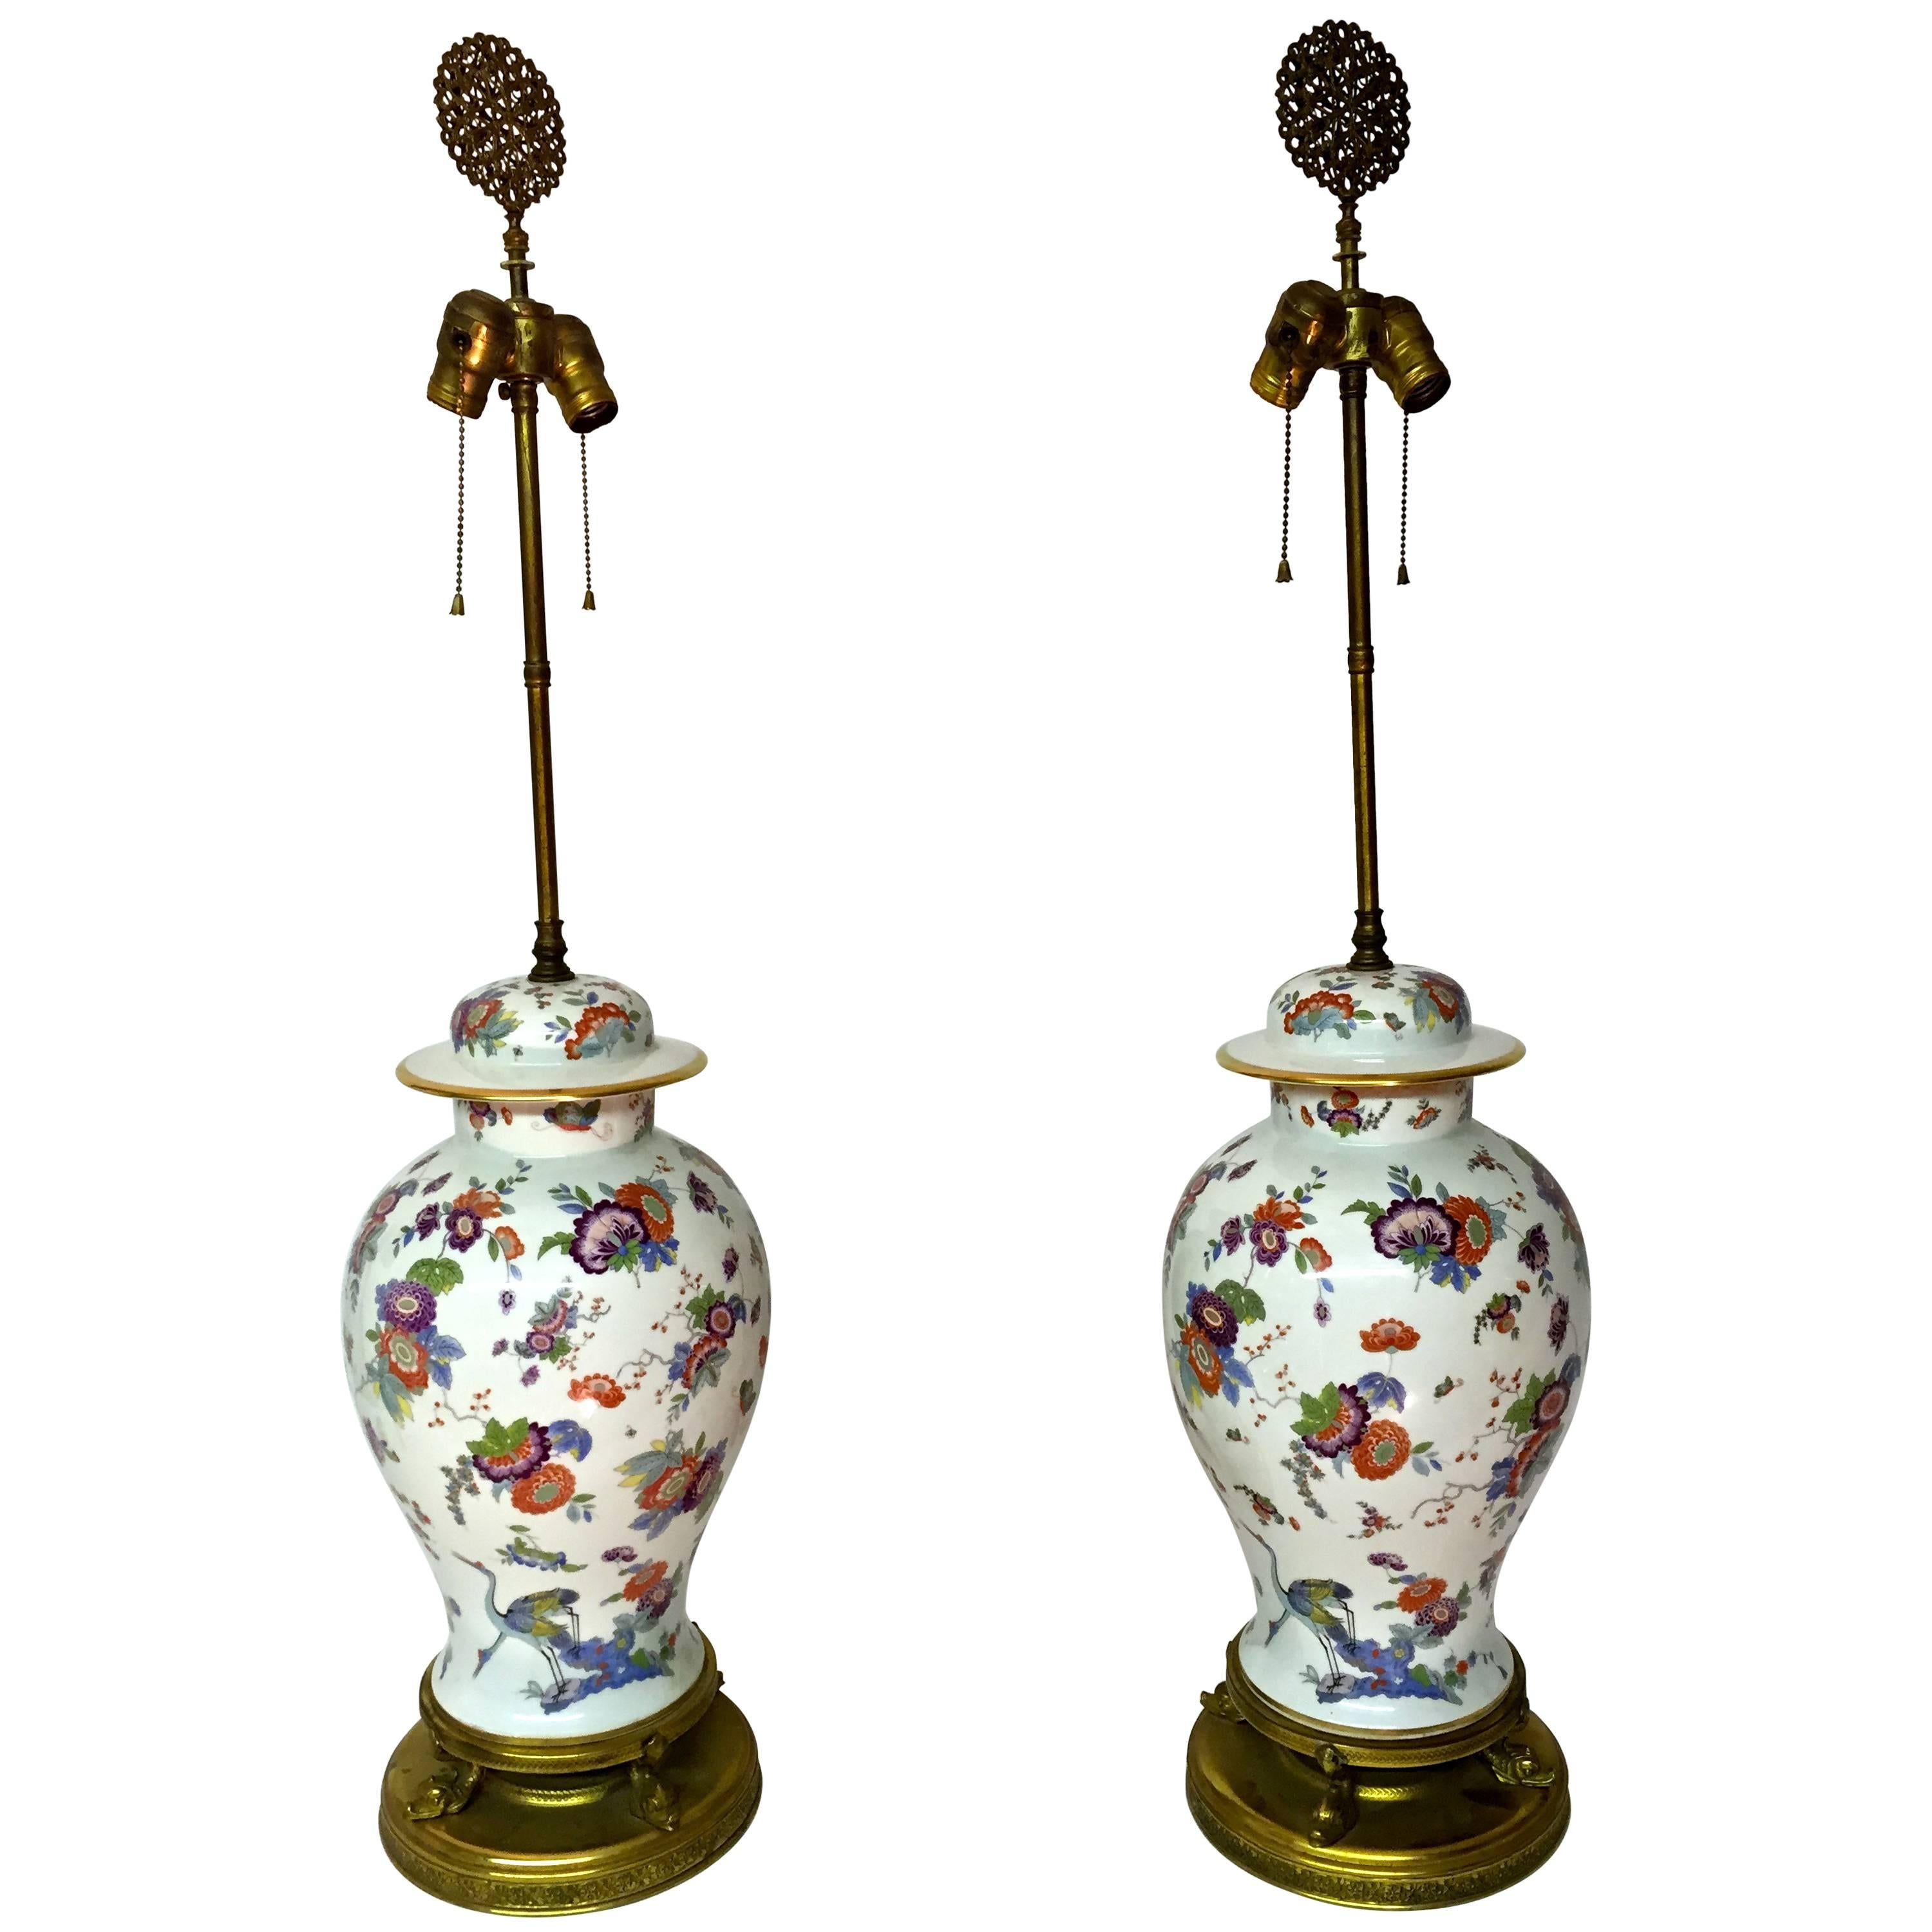 Pair of Asian Inspired German Porcelain Ginger Jar Lamps